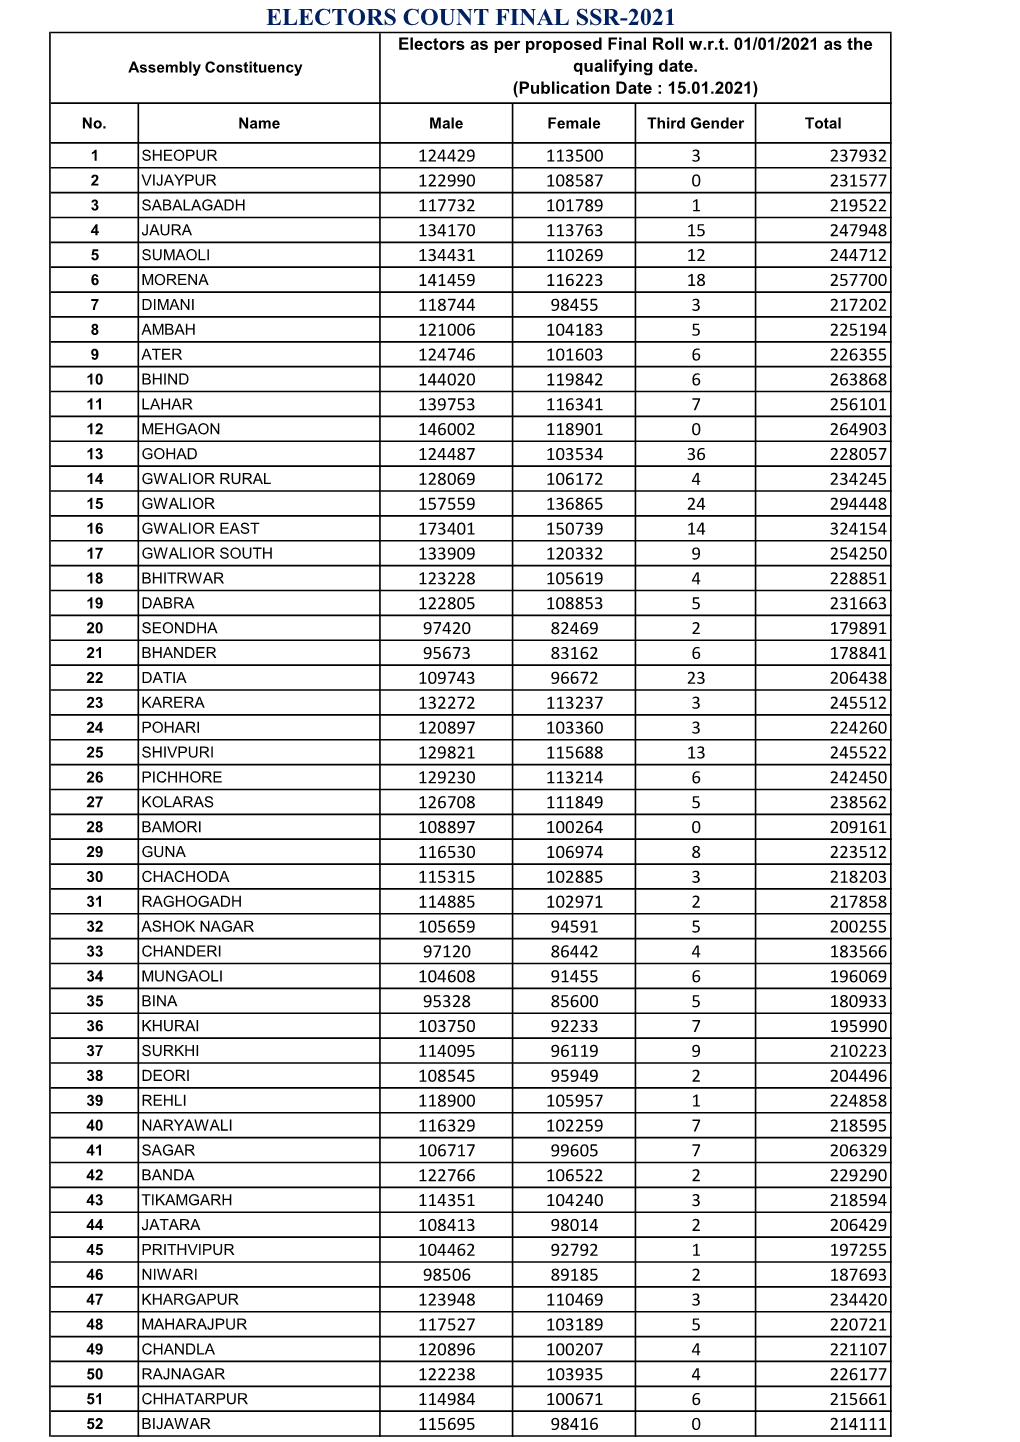 ELECTORS COUNT FINAL SSR-2021 Electors As Per Proposed Final Roll W.R.T